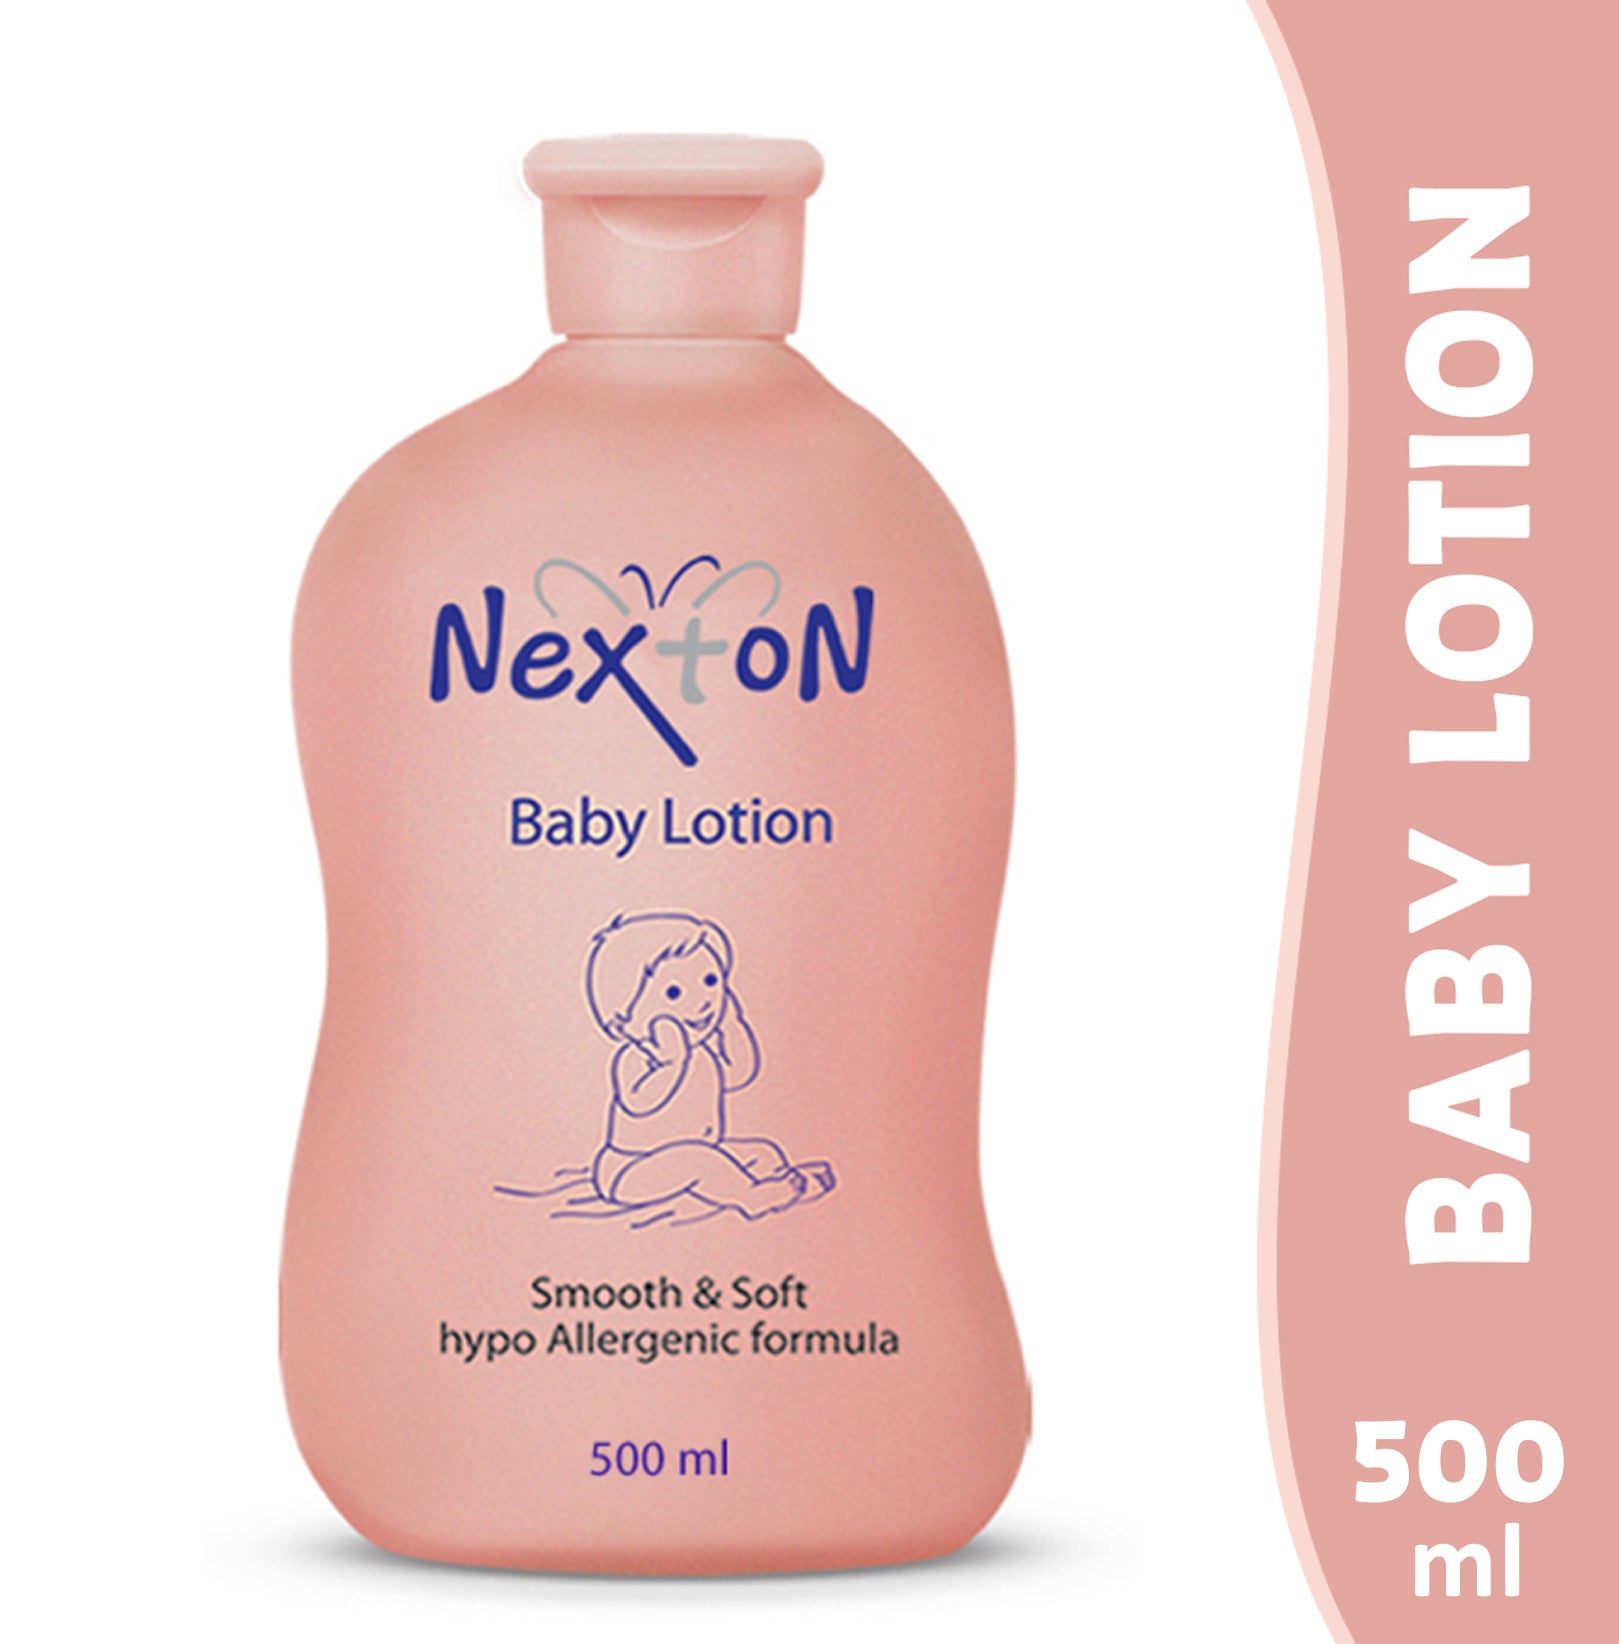 Nexton baby lotion